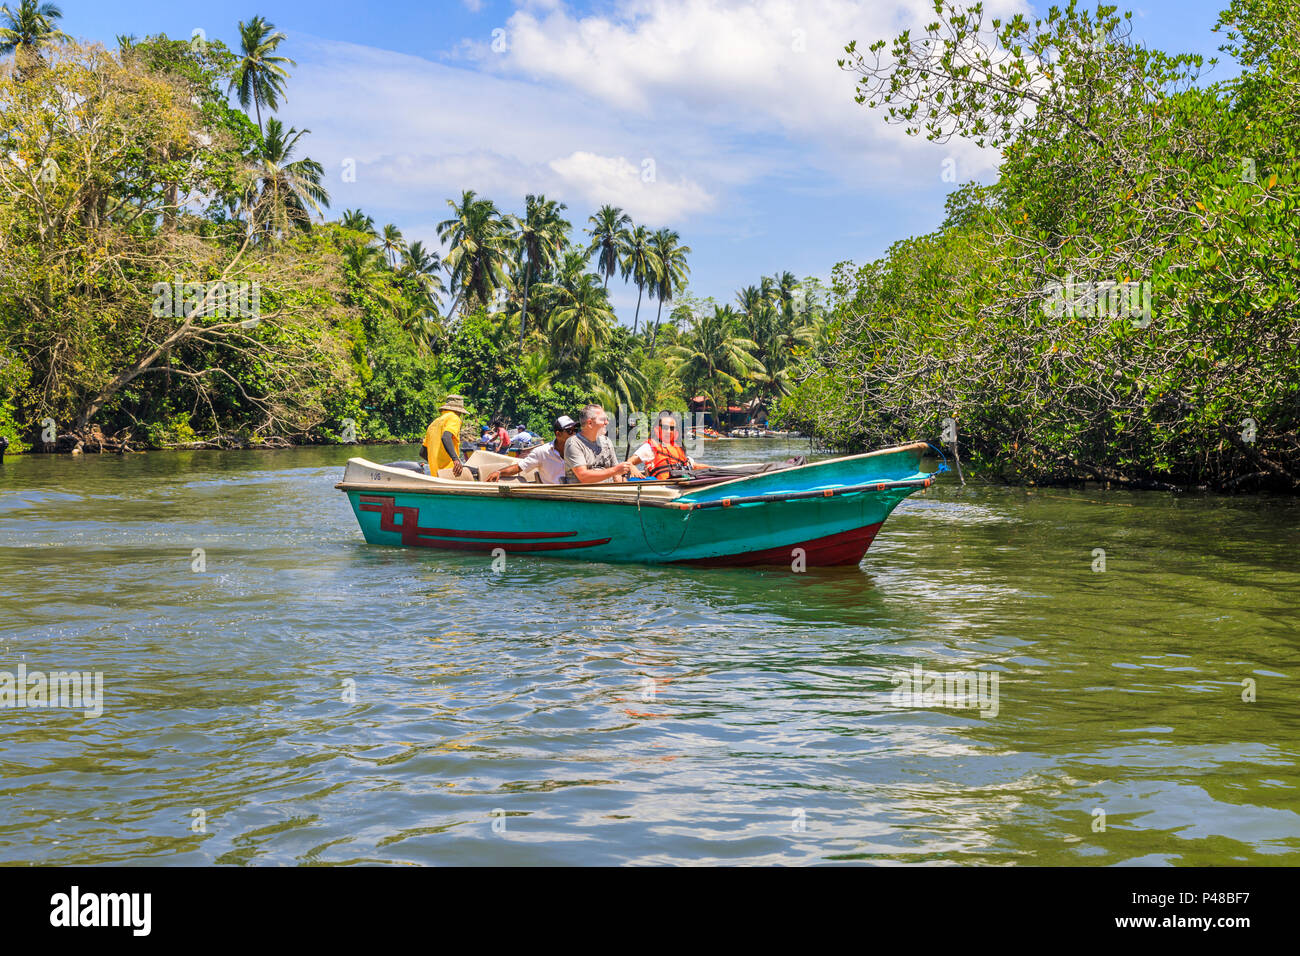 Turisti che si godono un viaggio in una piccola barca e viste di giungla tropicale palme e natura, Madu River, Madu Ganga zone umide, a sud-ovest dello Sri Lanka Foto Stock